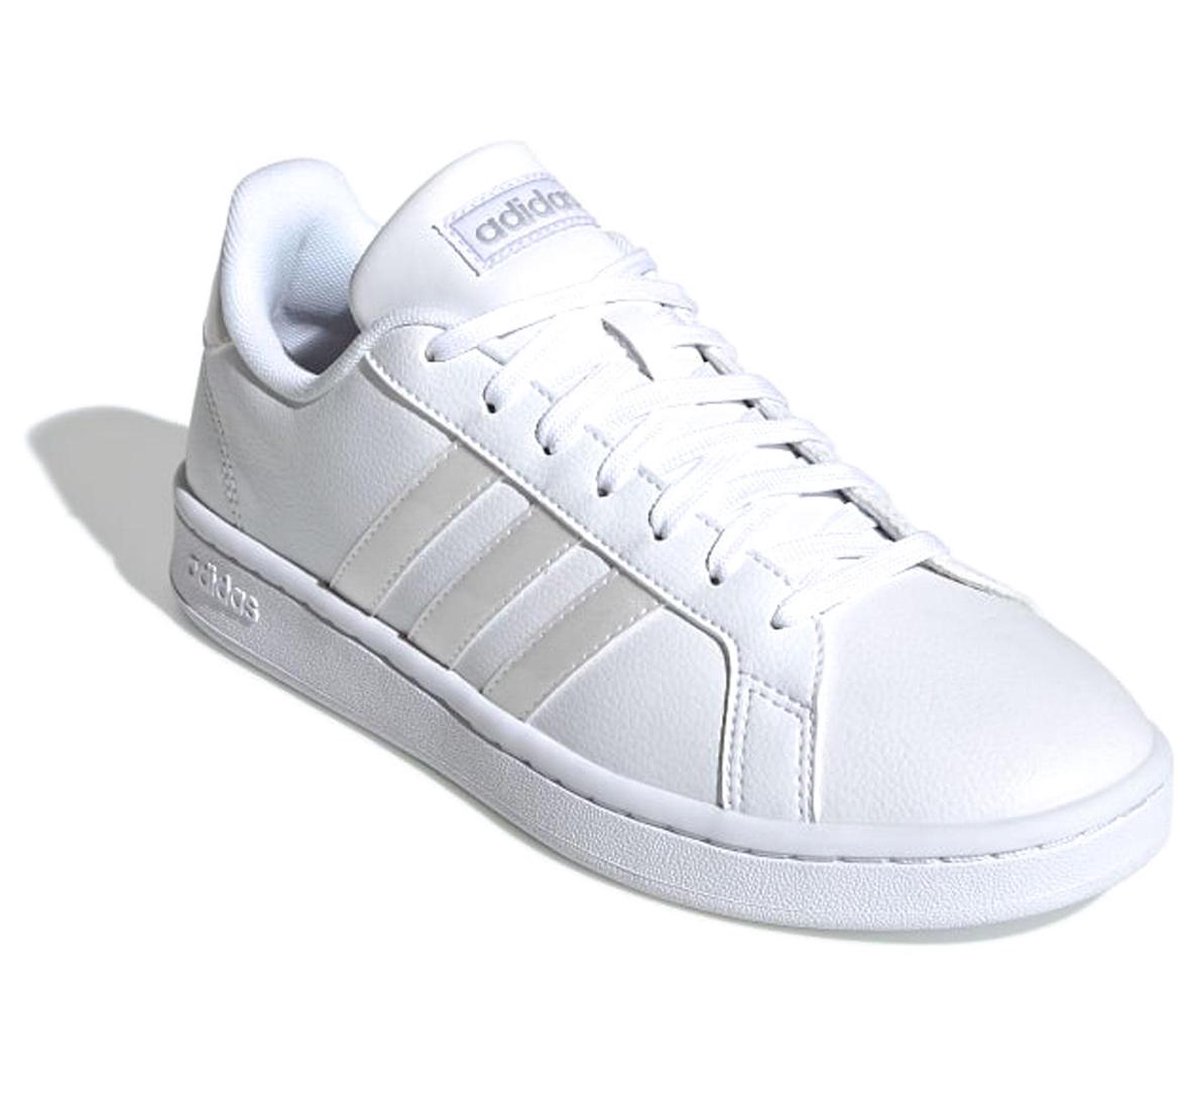 multifunctioneel Begunstigde Vooruit adidas Grand Court Sneakers - Maat 41 1/3 - Vrouwen - wit/ zilver | bol.com